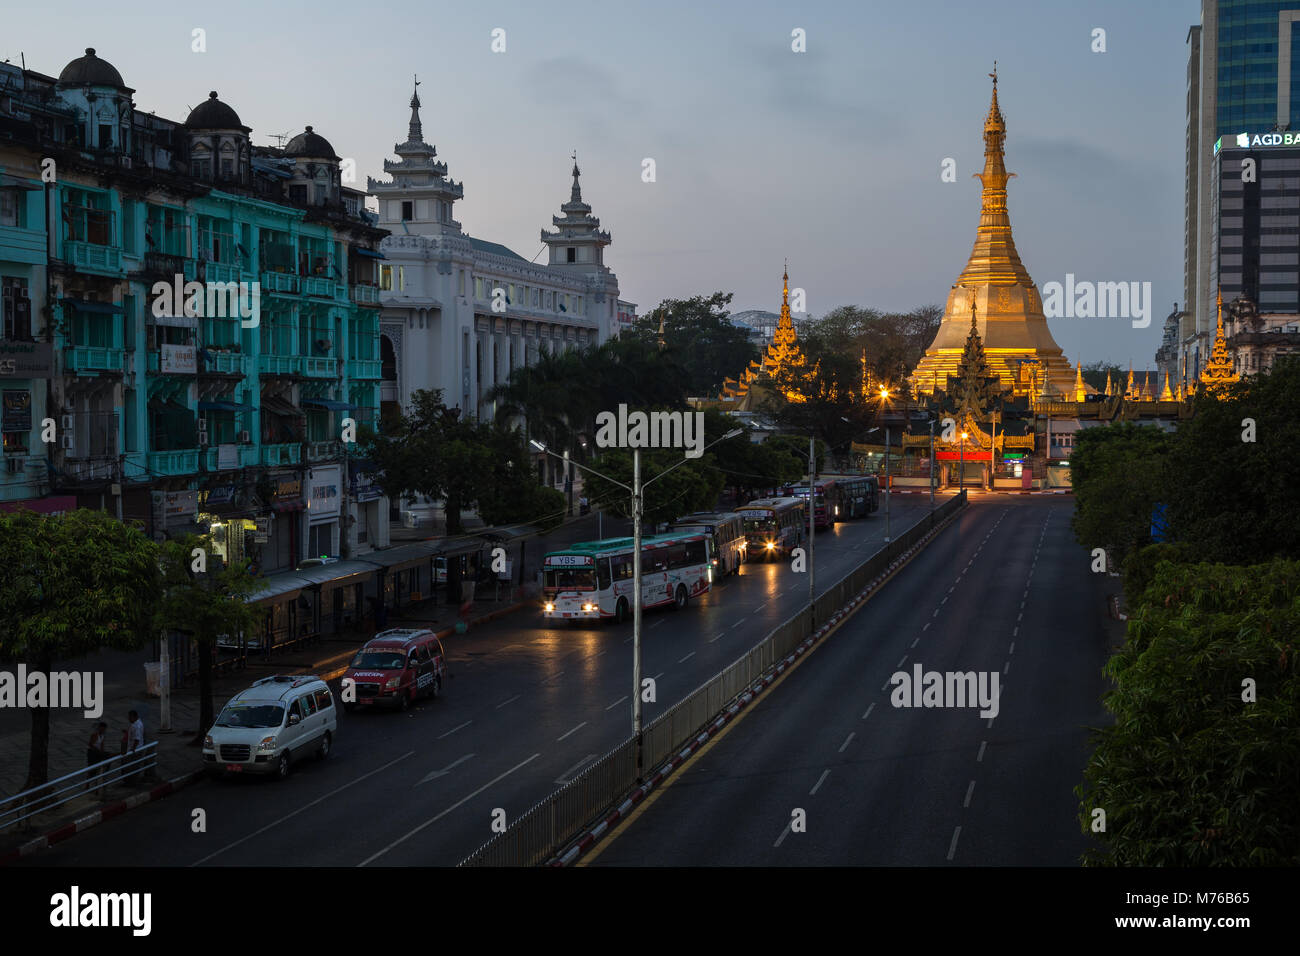 Vista della vecchia era coloniale edifici lungo le Sule Pagoda Road e illuminato Sule Pagoda nel centro di Yangon (Rangoon), Myanmar (Birmania), all'alba. Foto Stock